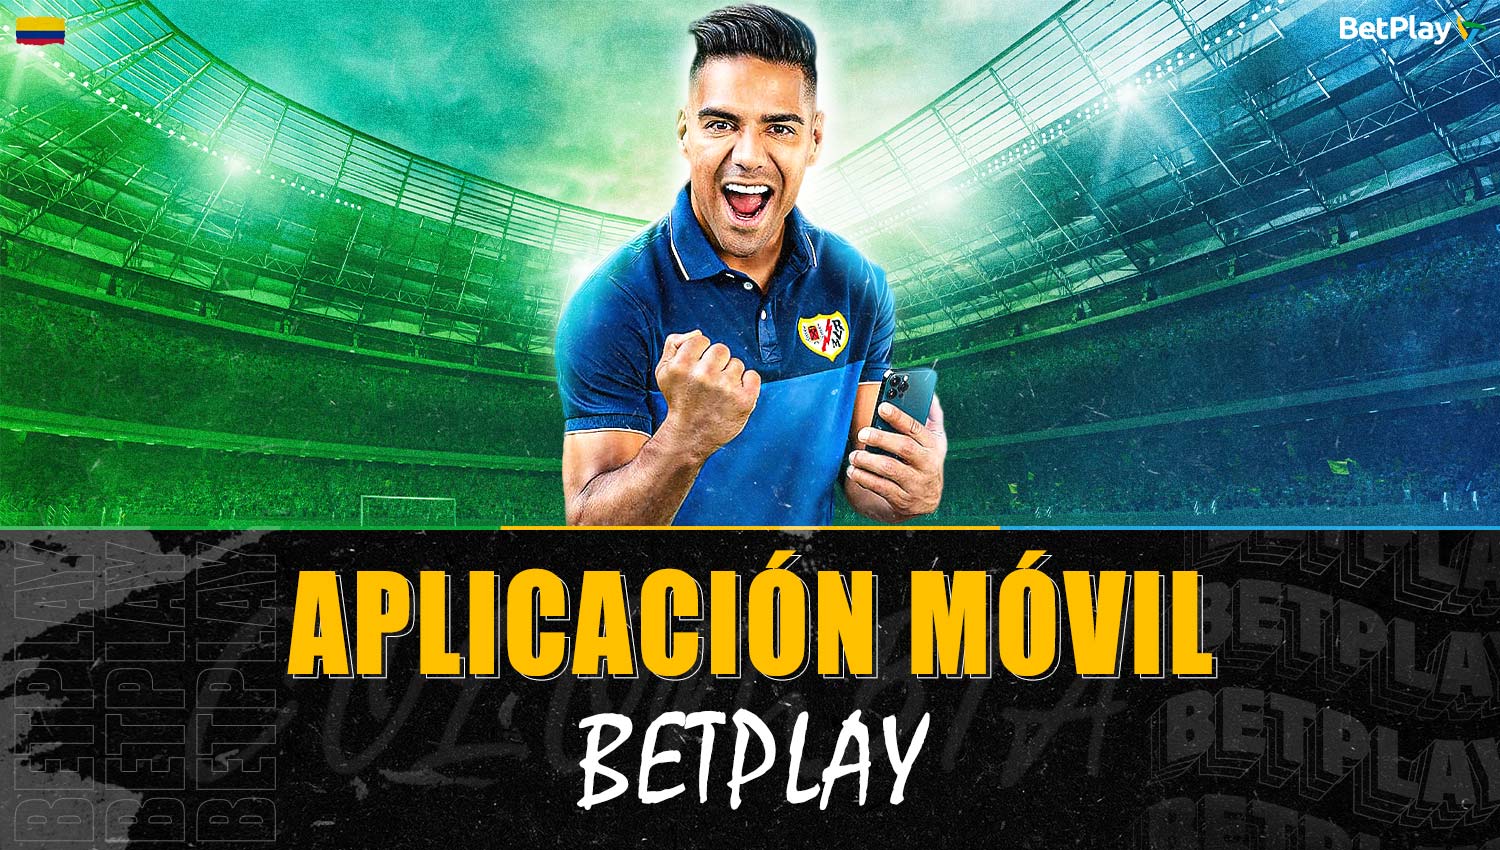 Acerca de la aplicación móvil Betplay para jugadores de Colombia